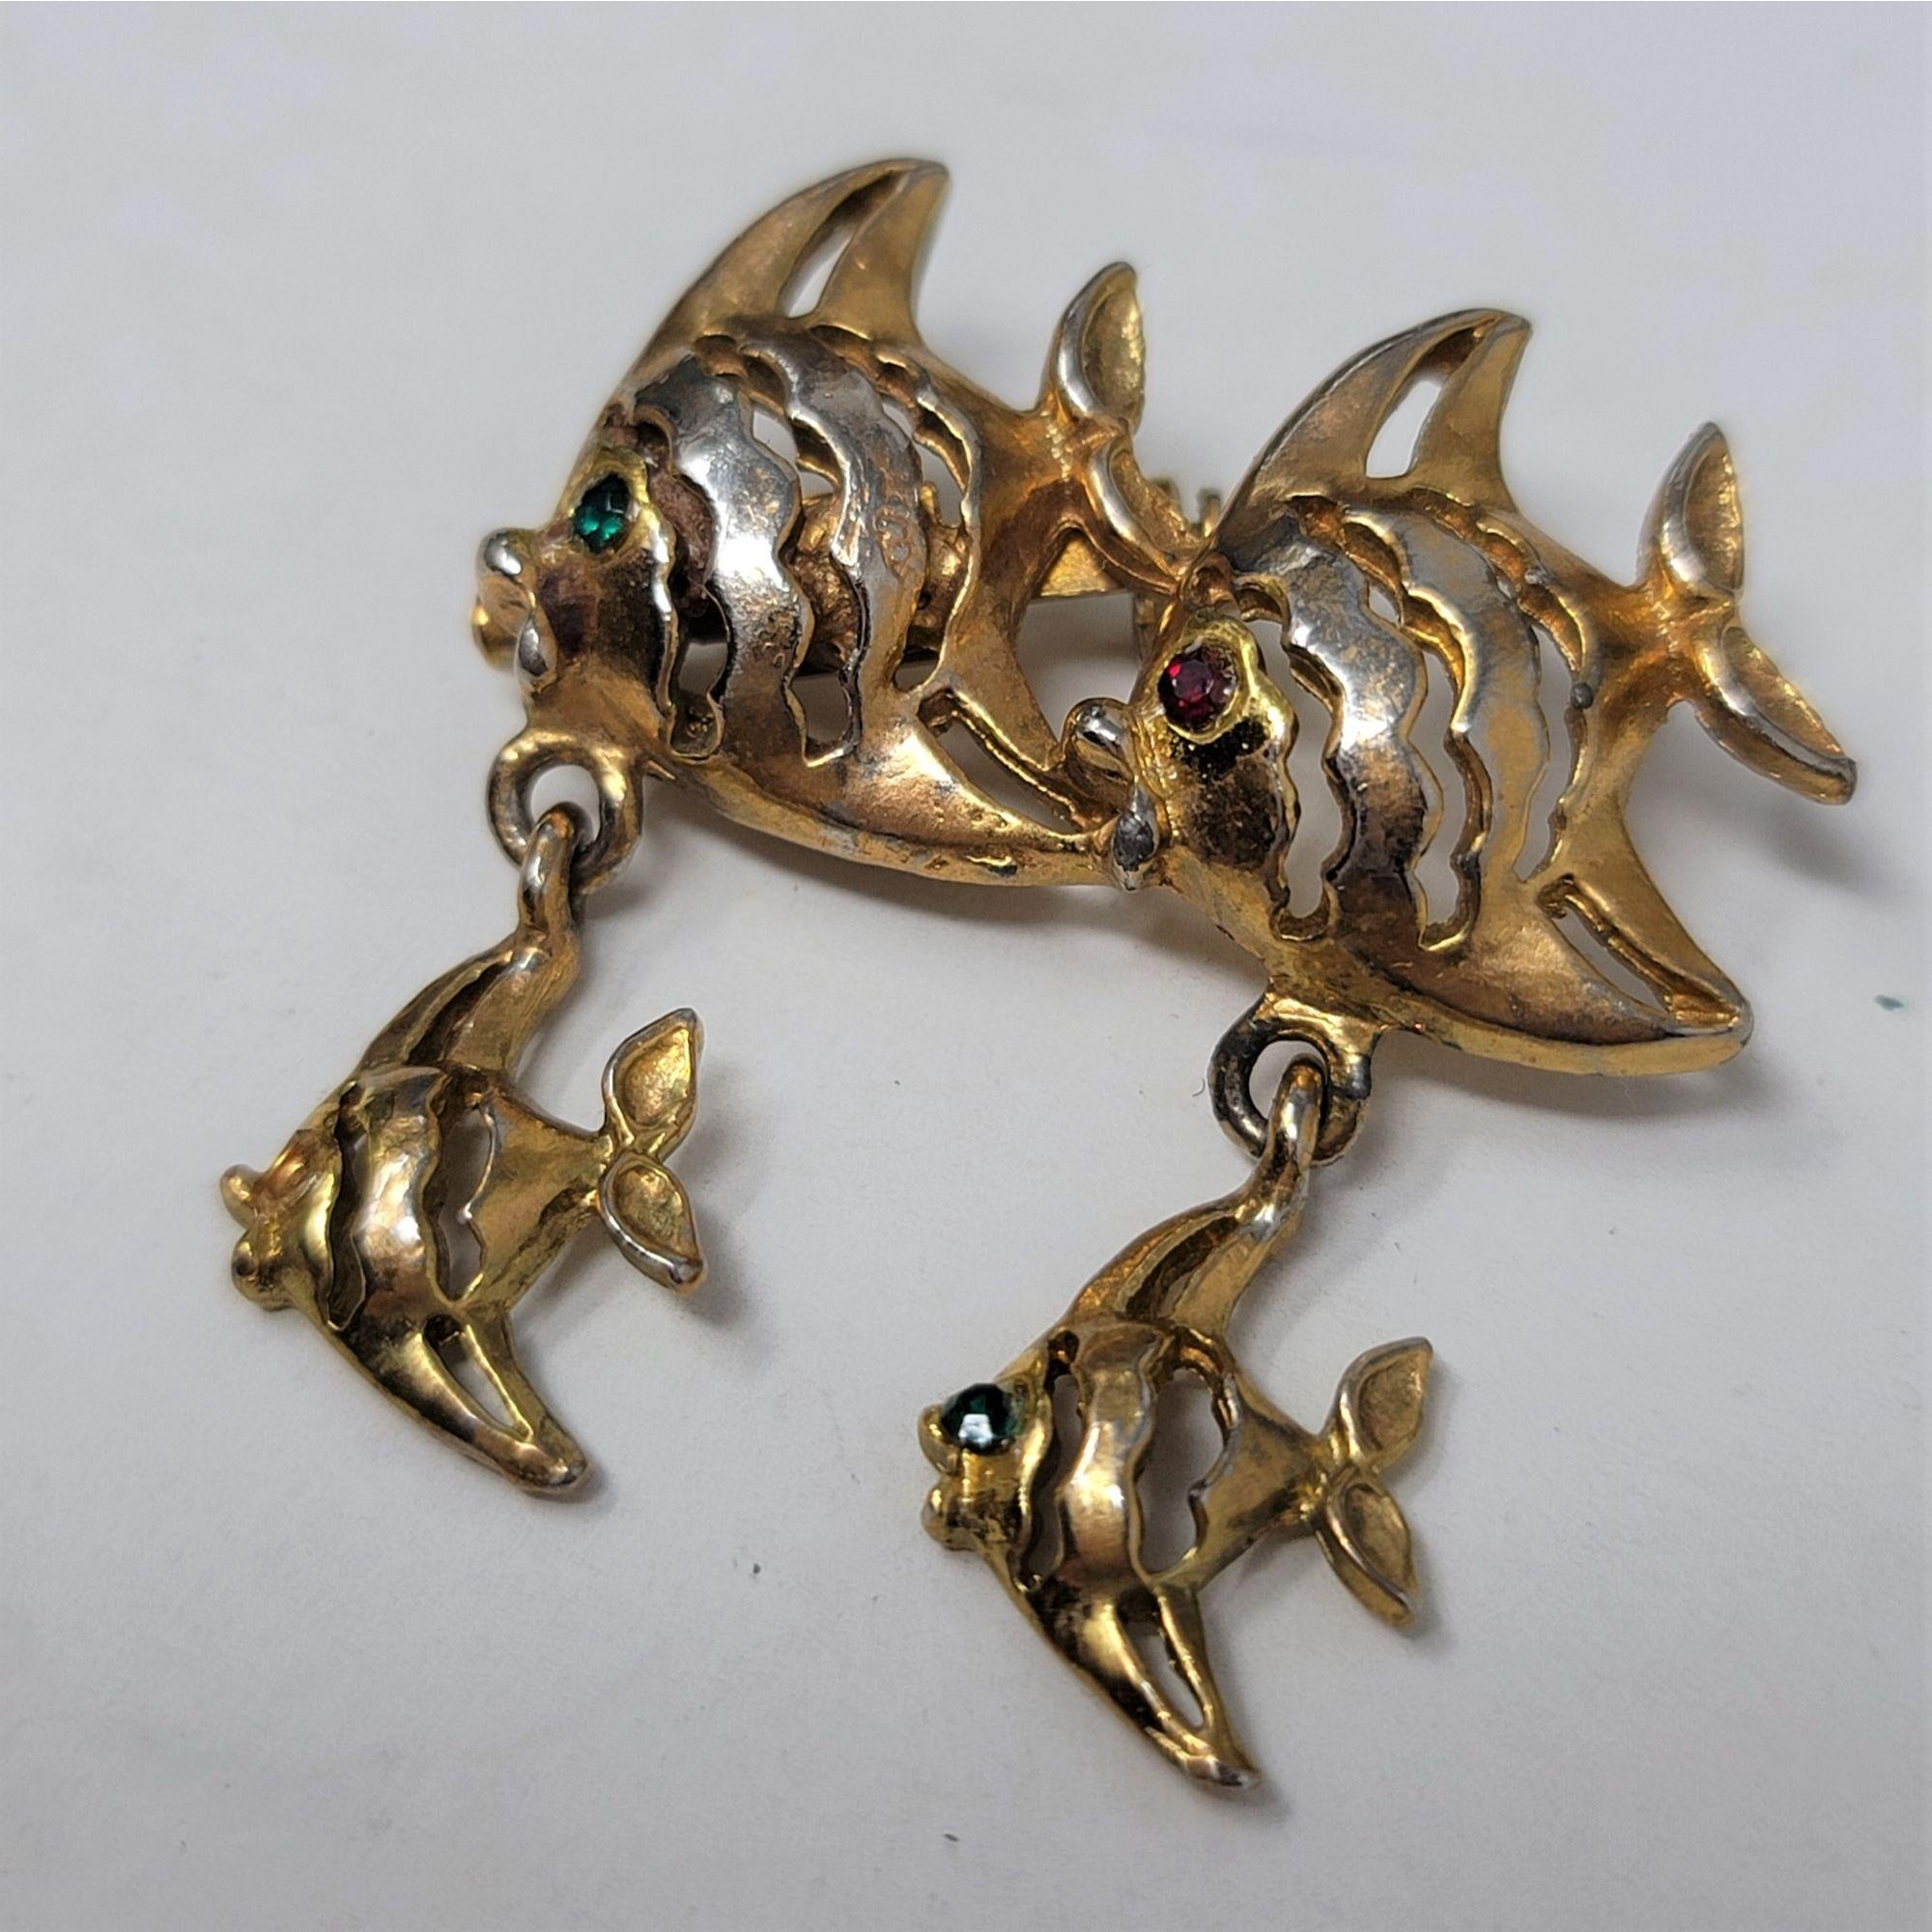 A School of Fish Pin Brooch Rhinestone Eyes Gold